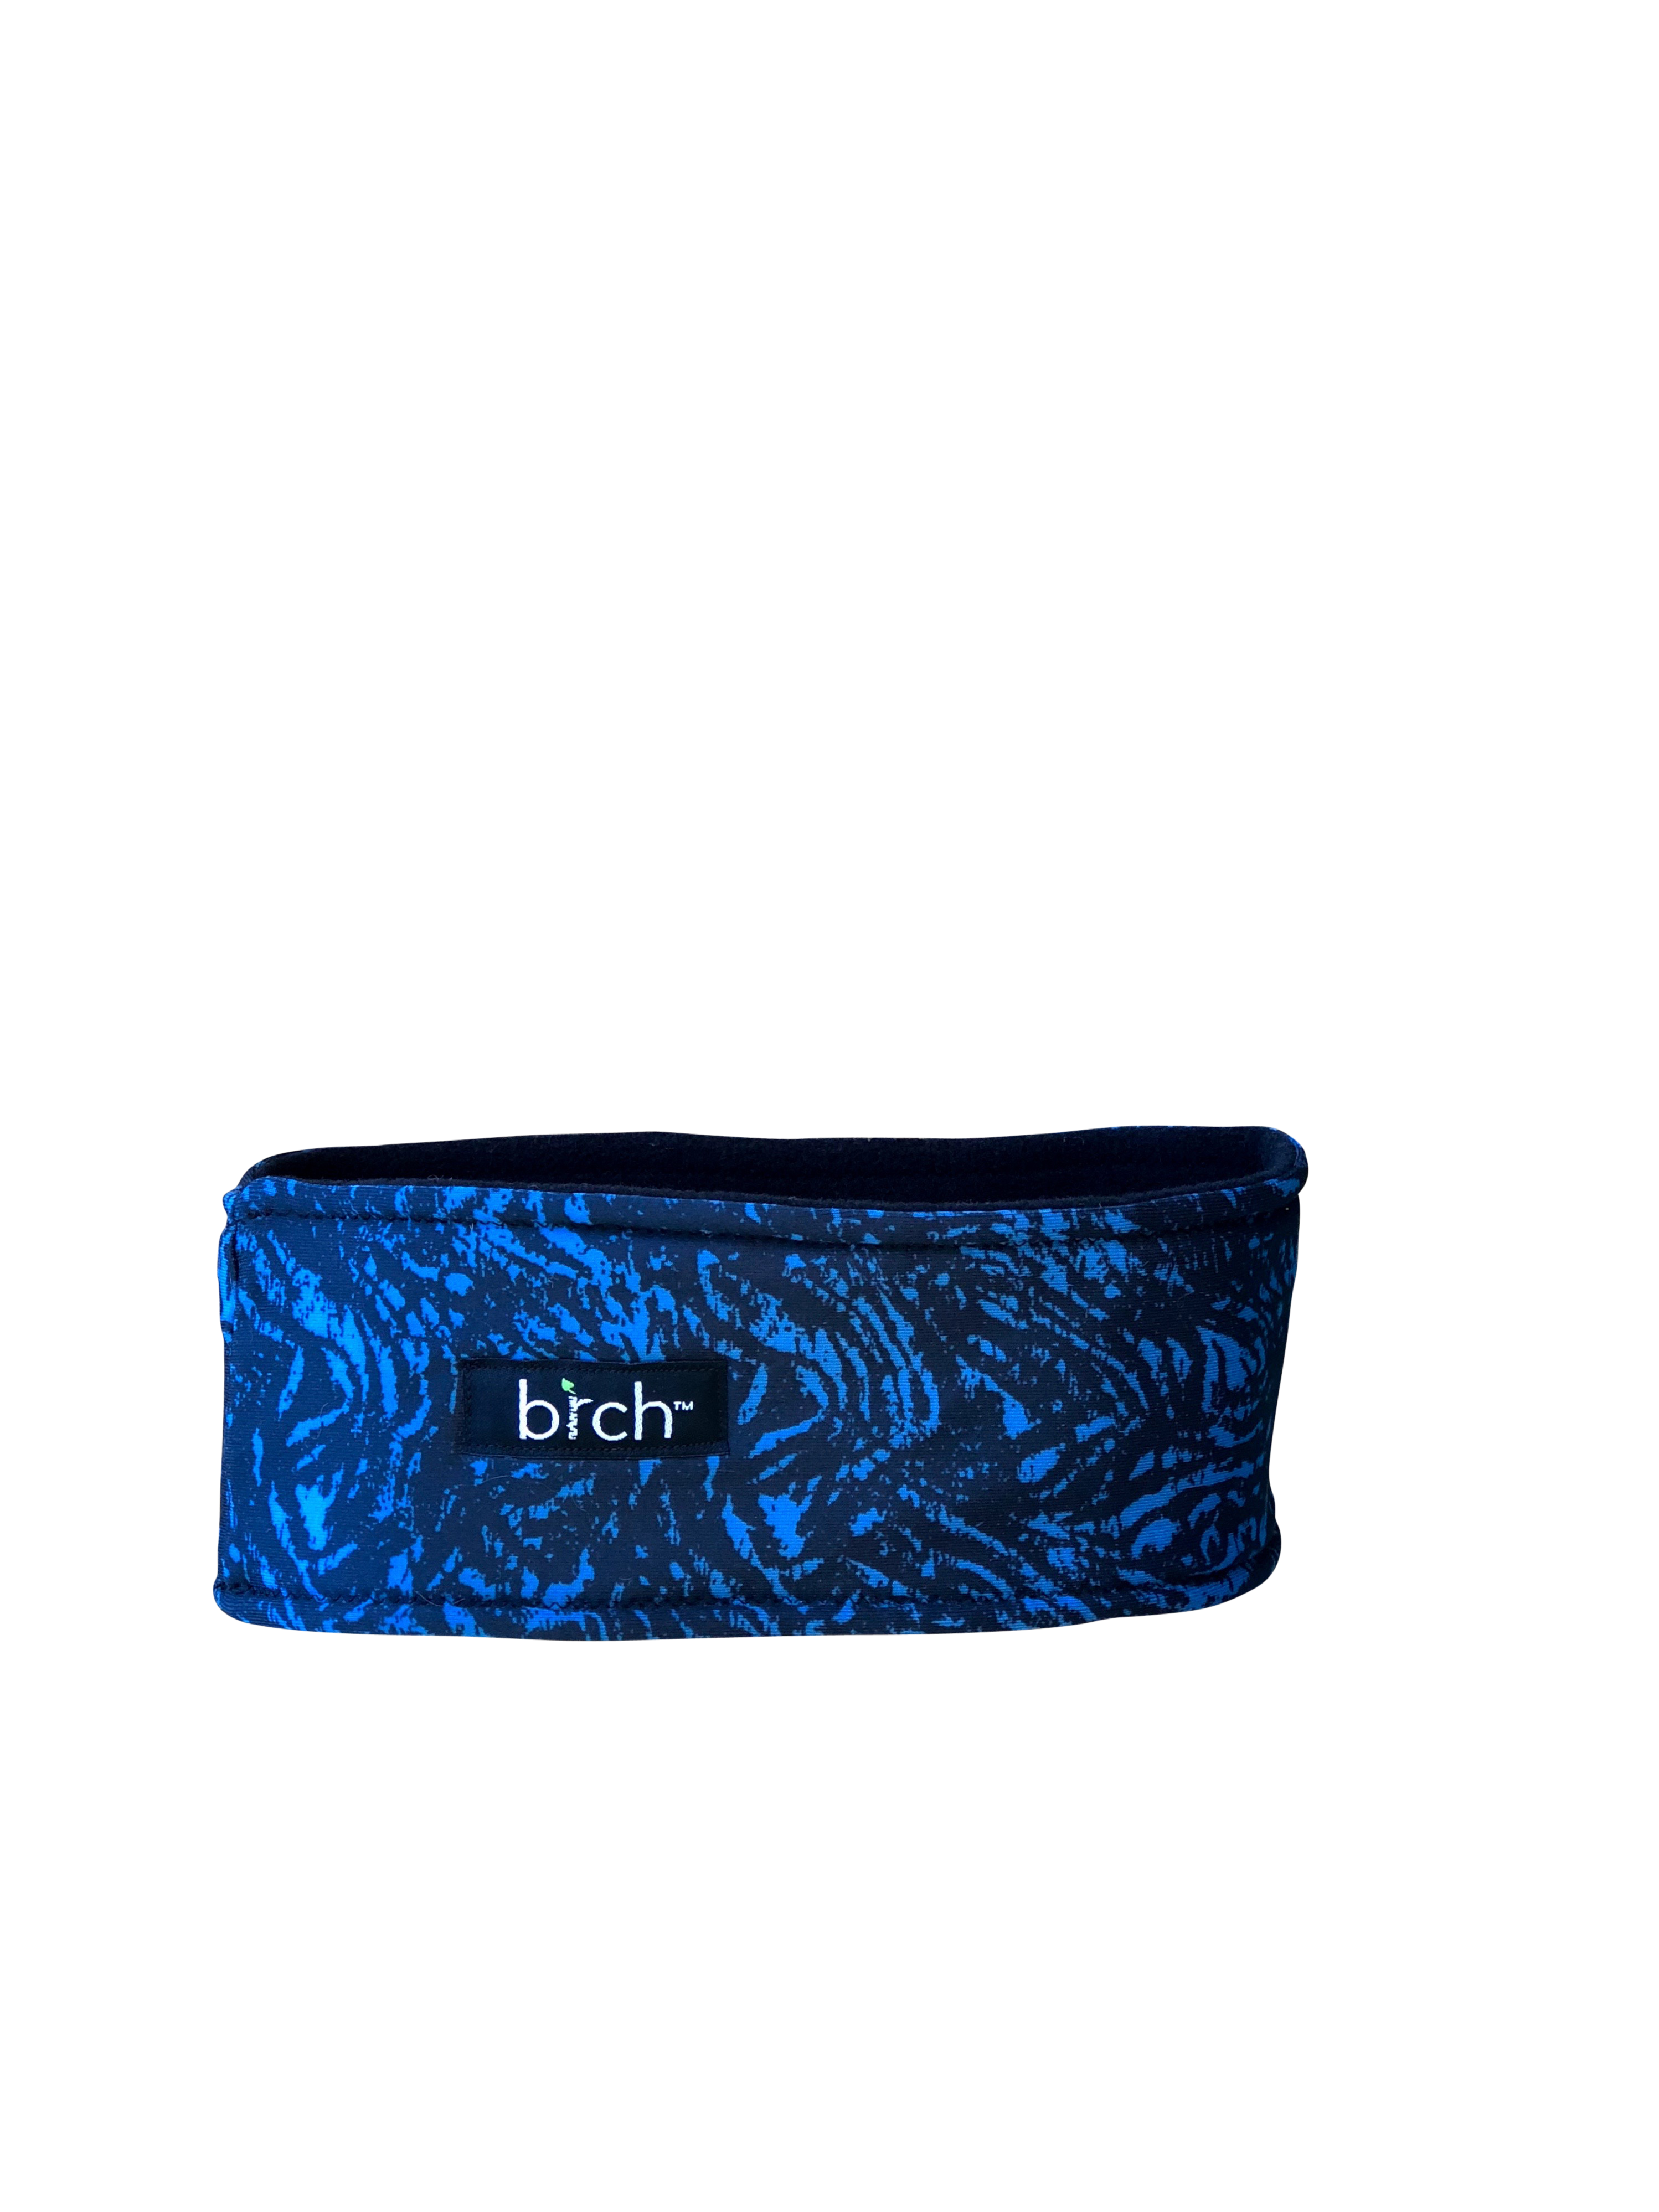 Black Blue Abstract Polartec Lined Headband